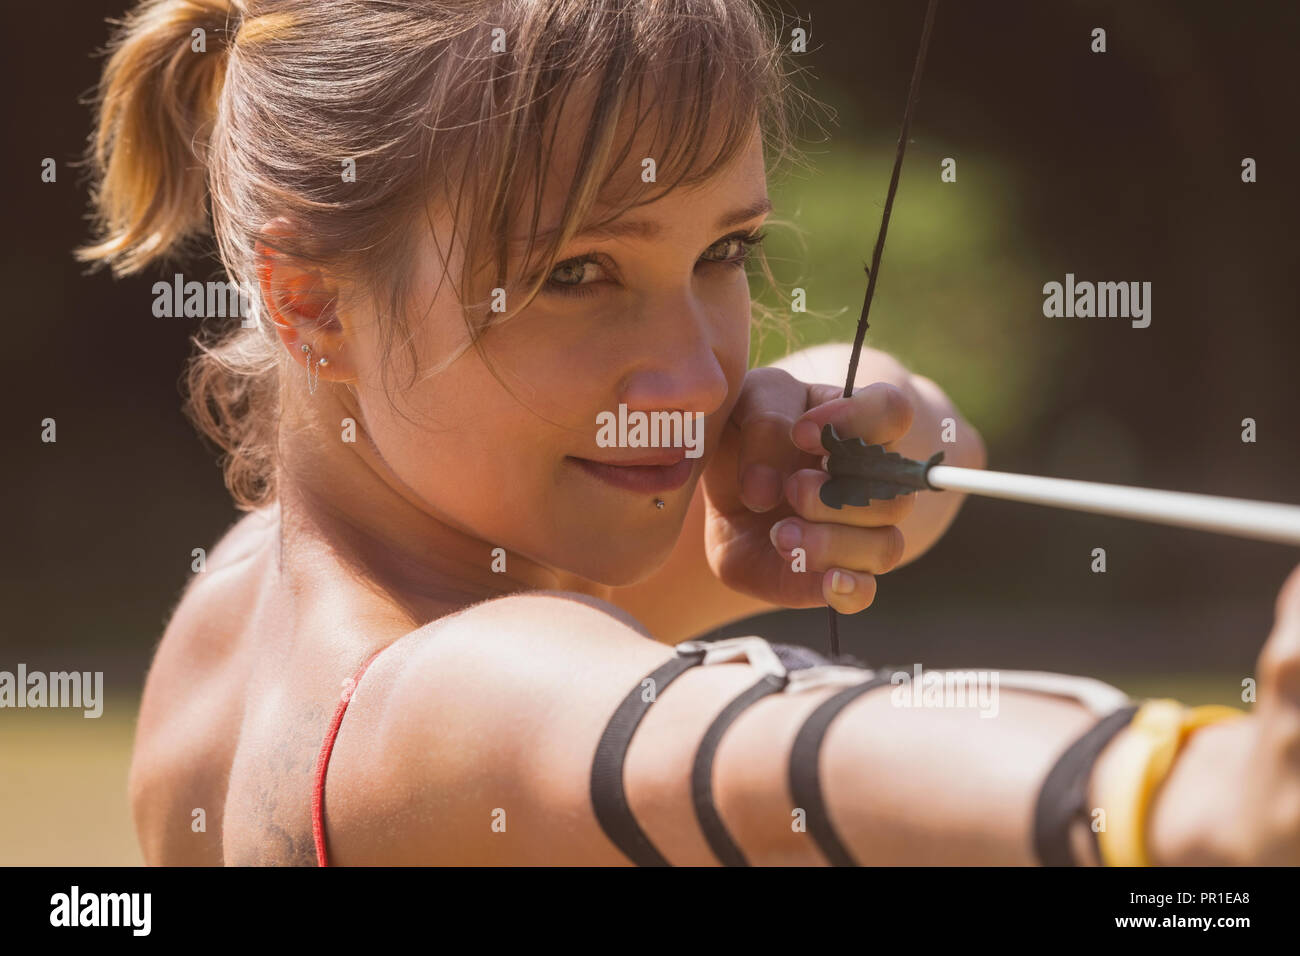 Woman practicing archery au boot camp Banque D'Images